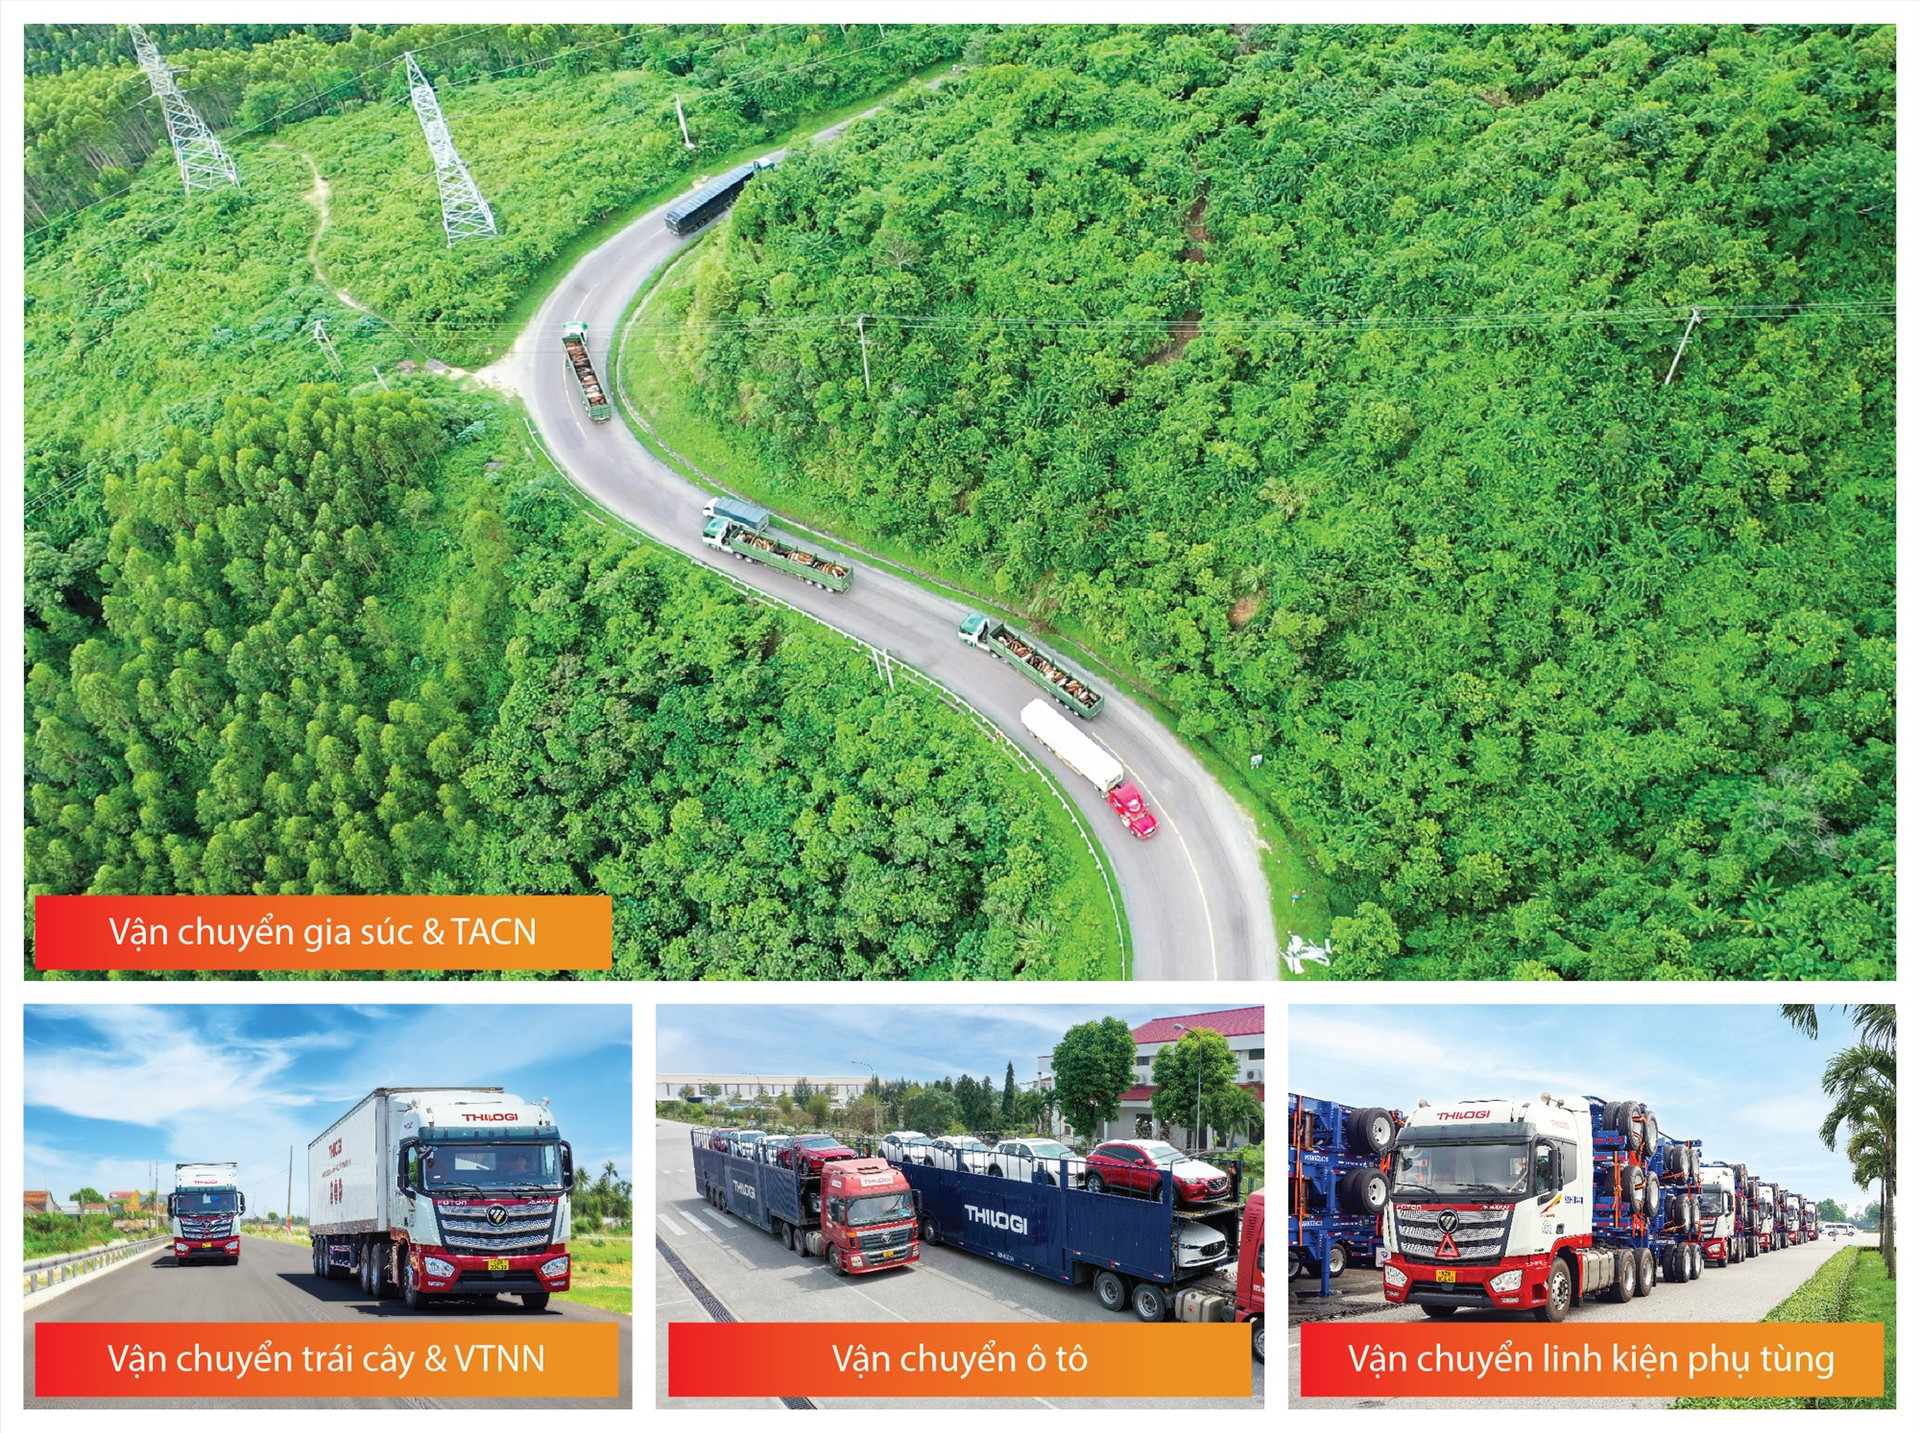 THILOGI sở hữu hơn 200 phương tiện vận tải đường bộ, cung ứng dịch vụ vận tải đường bộ nội địa và xuyên biên giới (Lào, Campuchia) vận chuyển ô tô, linh kiện phụ tùng, hàng hoá nông nghiệp như: trái cây, gia súc và vật tư nông nghiệp…